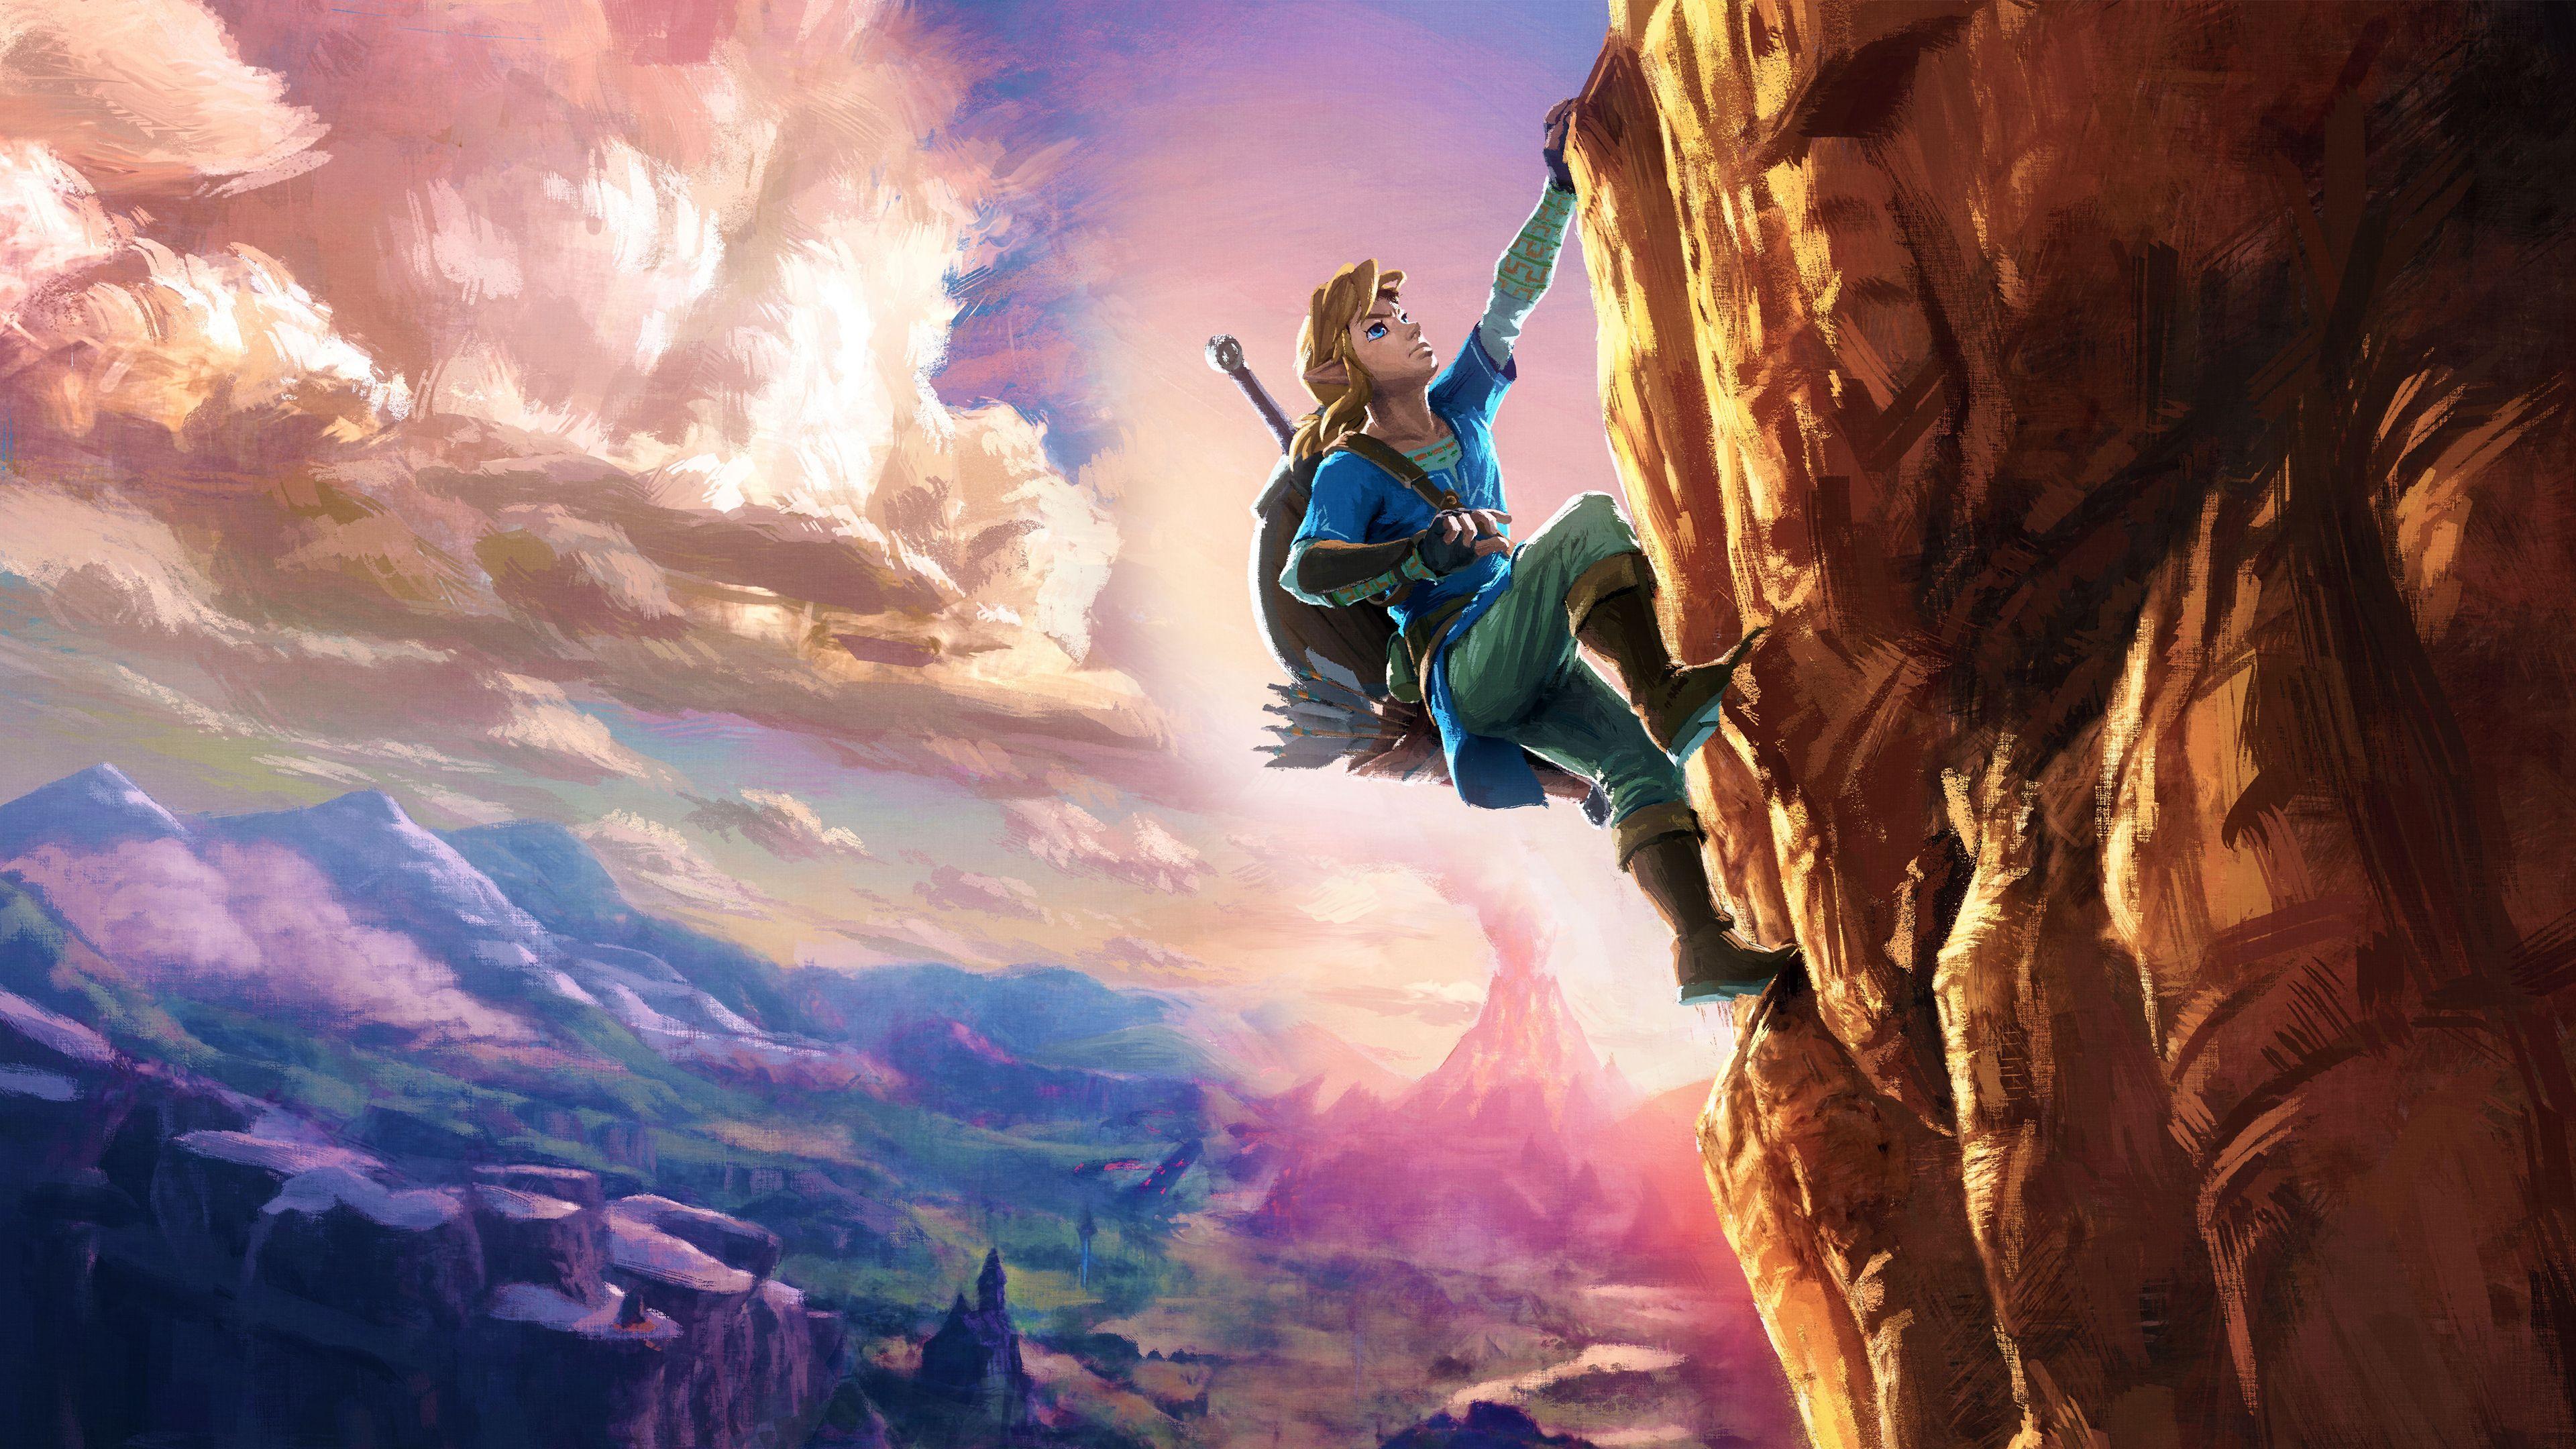 3840 x 2160 · jpeg - Zelda PC Wallpapers - Wallpaper Cave